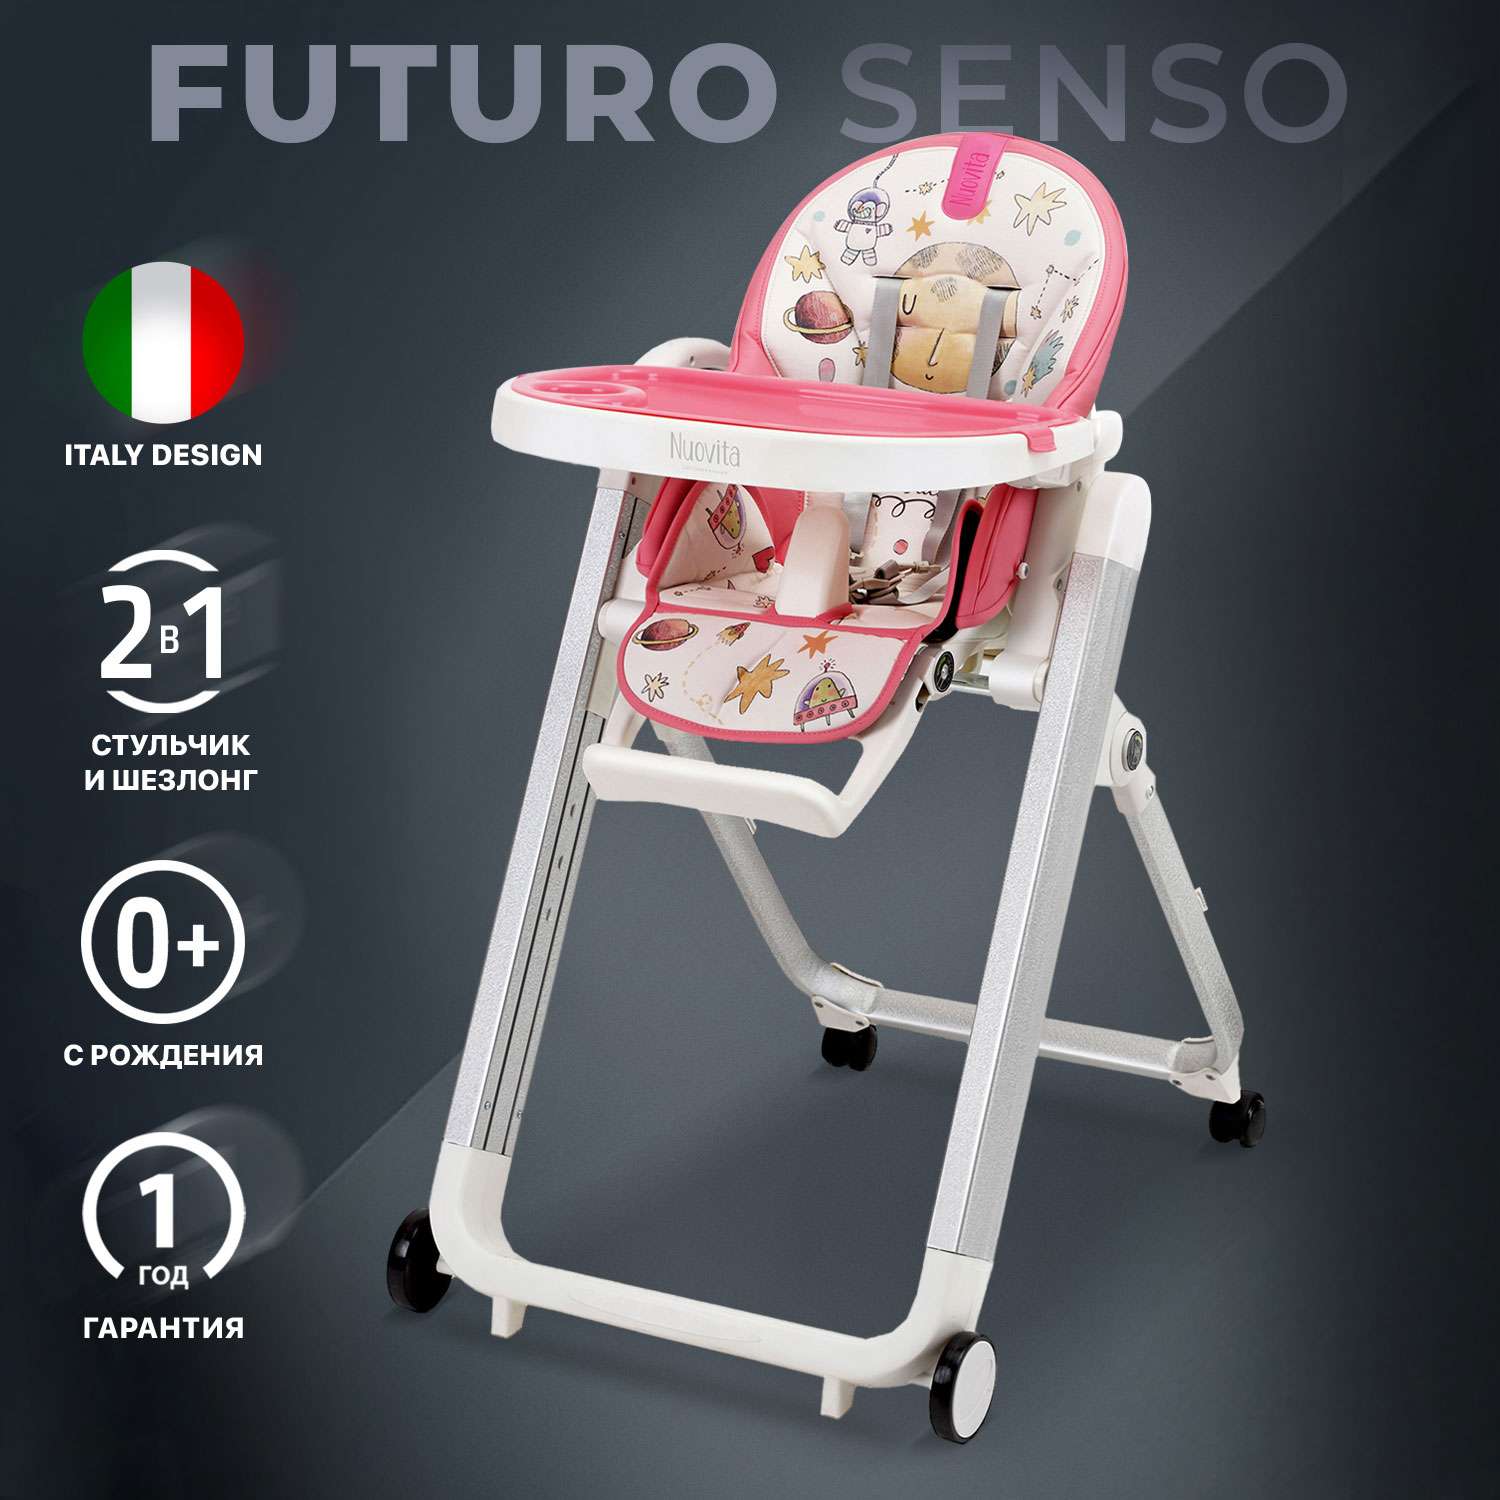 Стульчик для кормления Nuovita Futuro Senso Bianco Розовый космос - фото 2